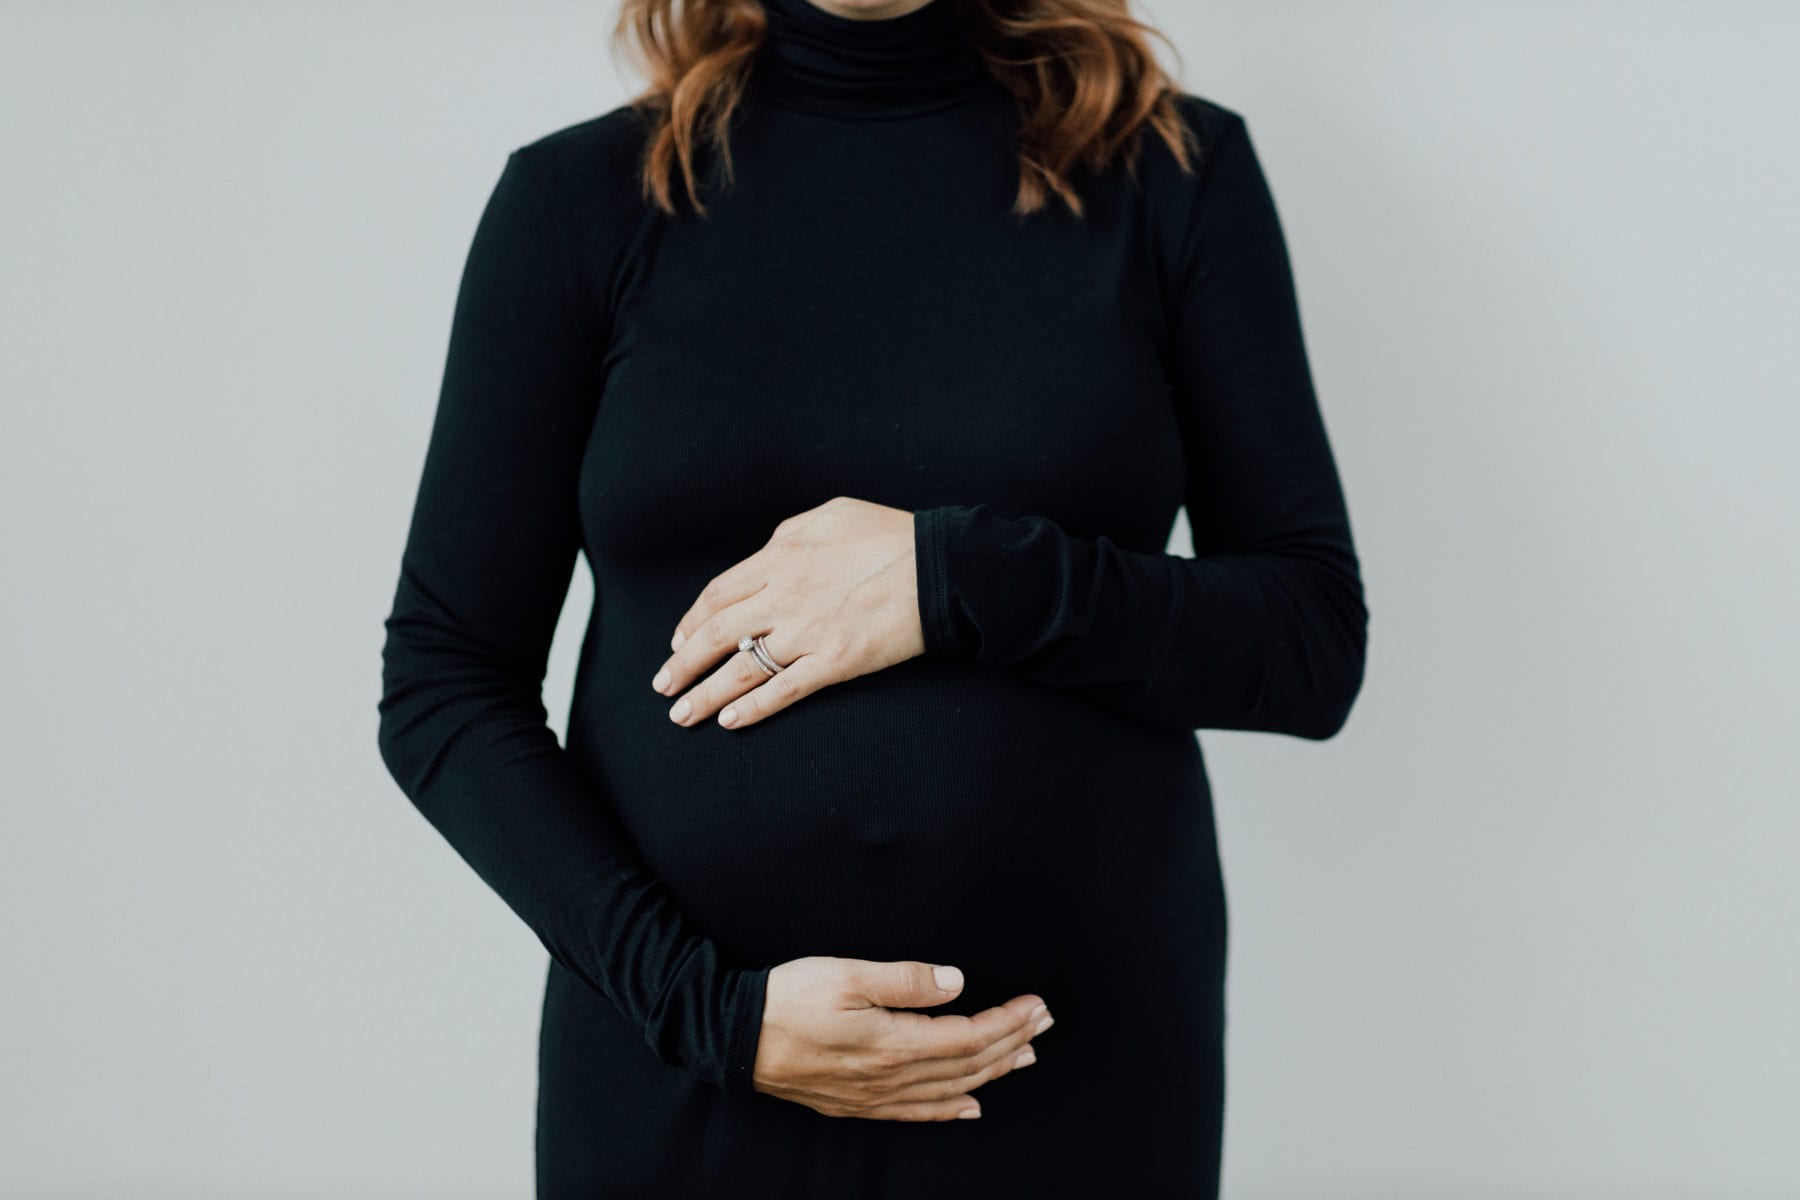 Vogue Inspired Maternity Shoot - Dayton Maternity PhotographerShoot - Dayton Maternity Photographer